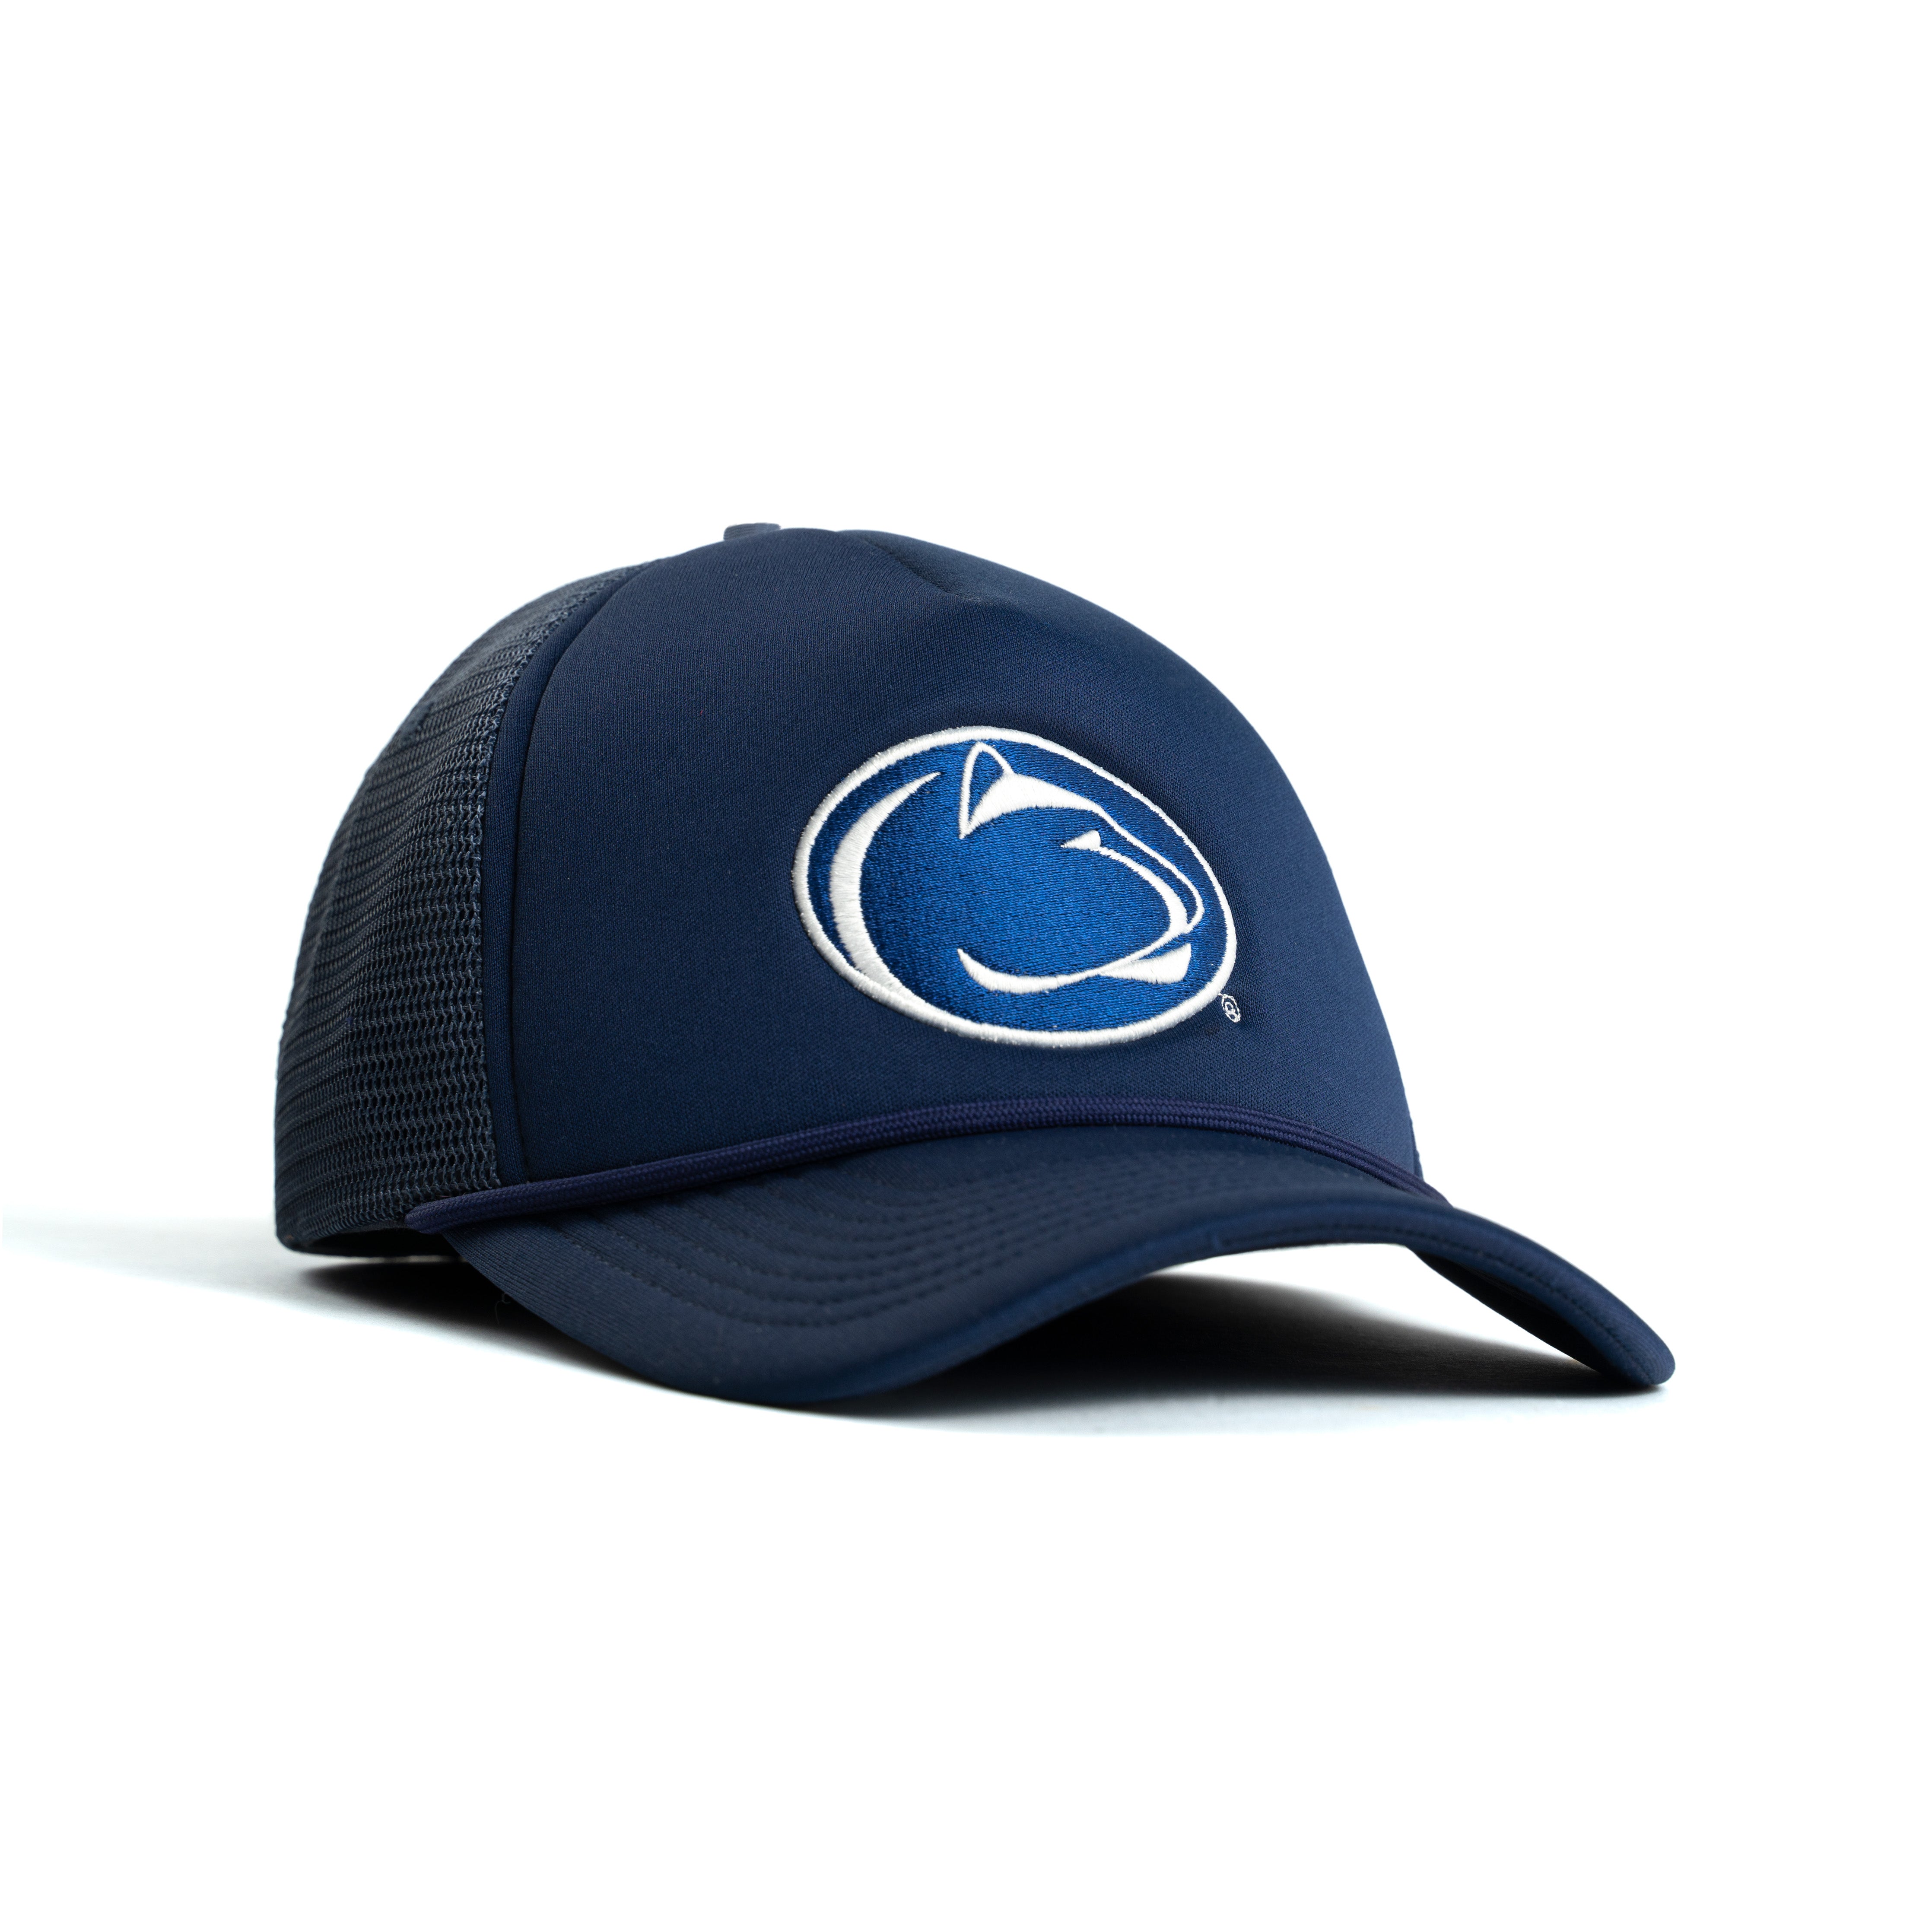 Penn State Nittany Lions Trucker Hat